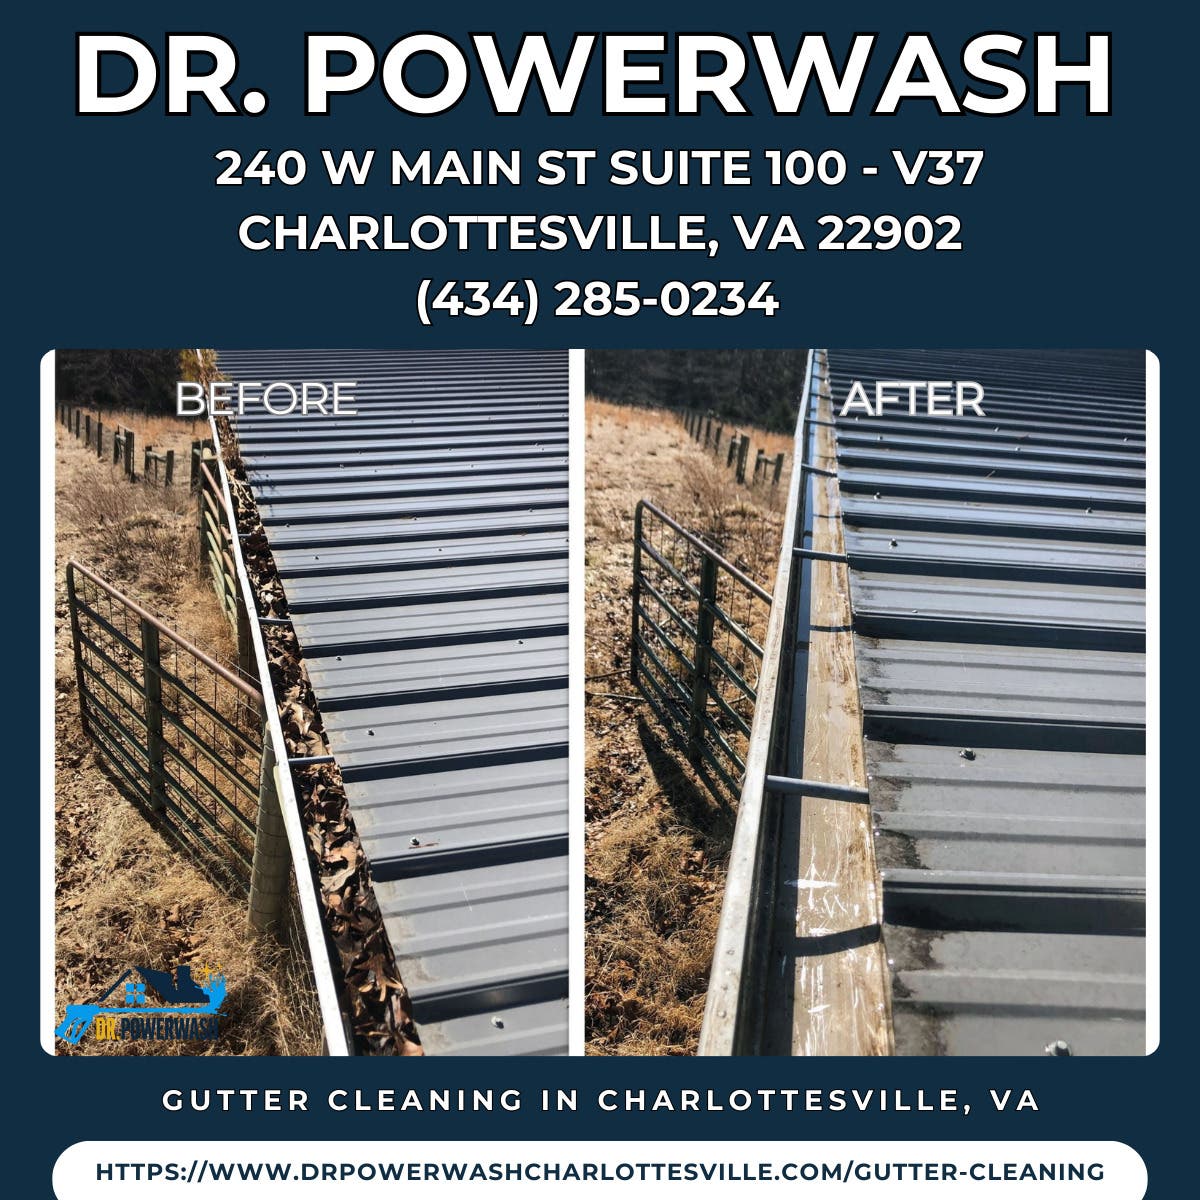 Gutter Cleaning in Charlottesville, VA - Dr. Powerwash.